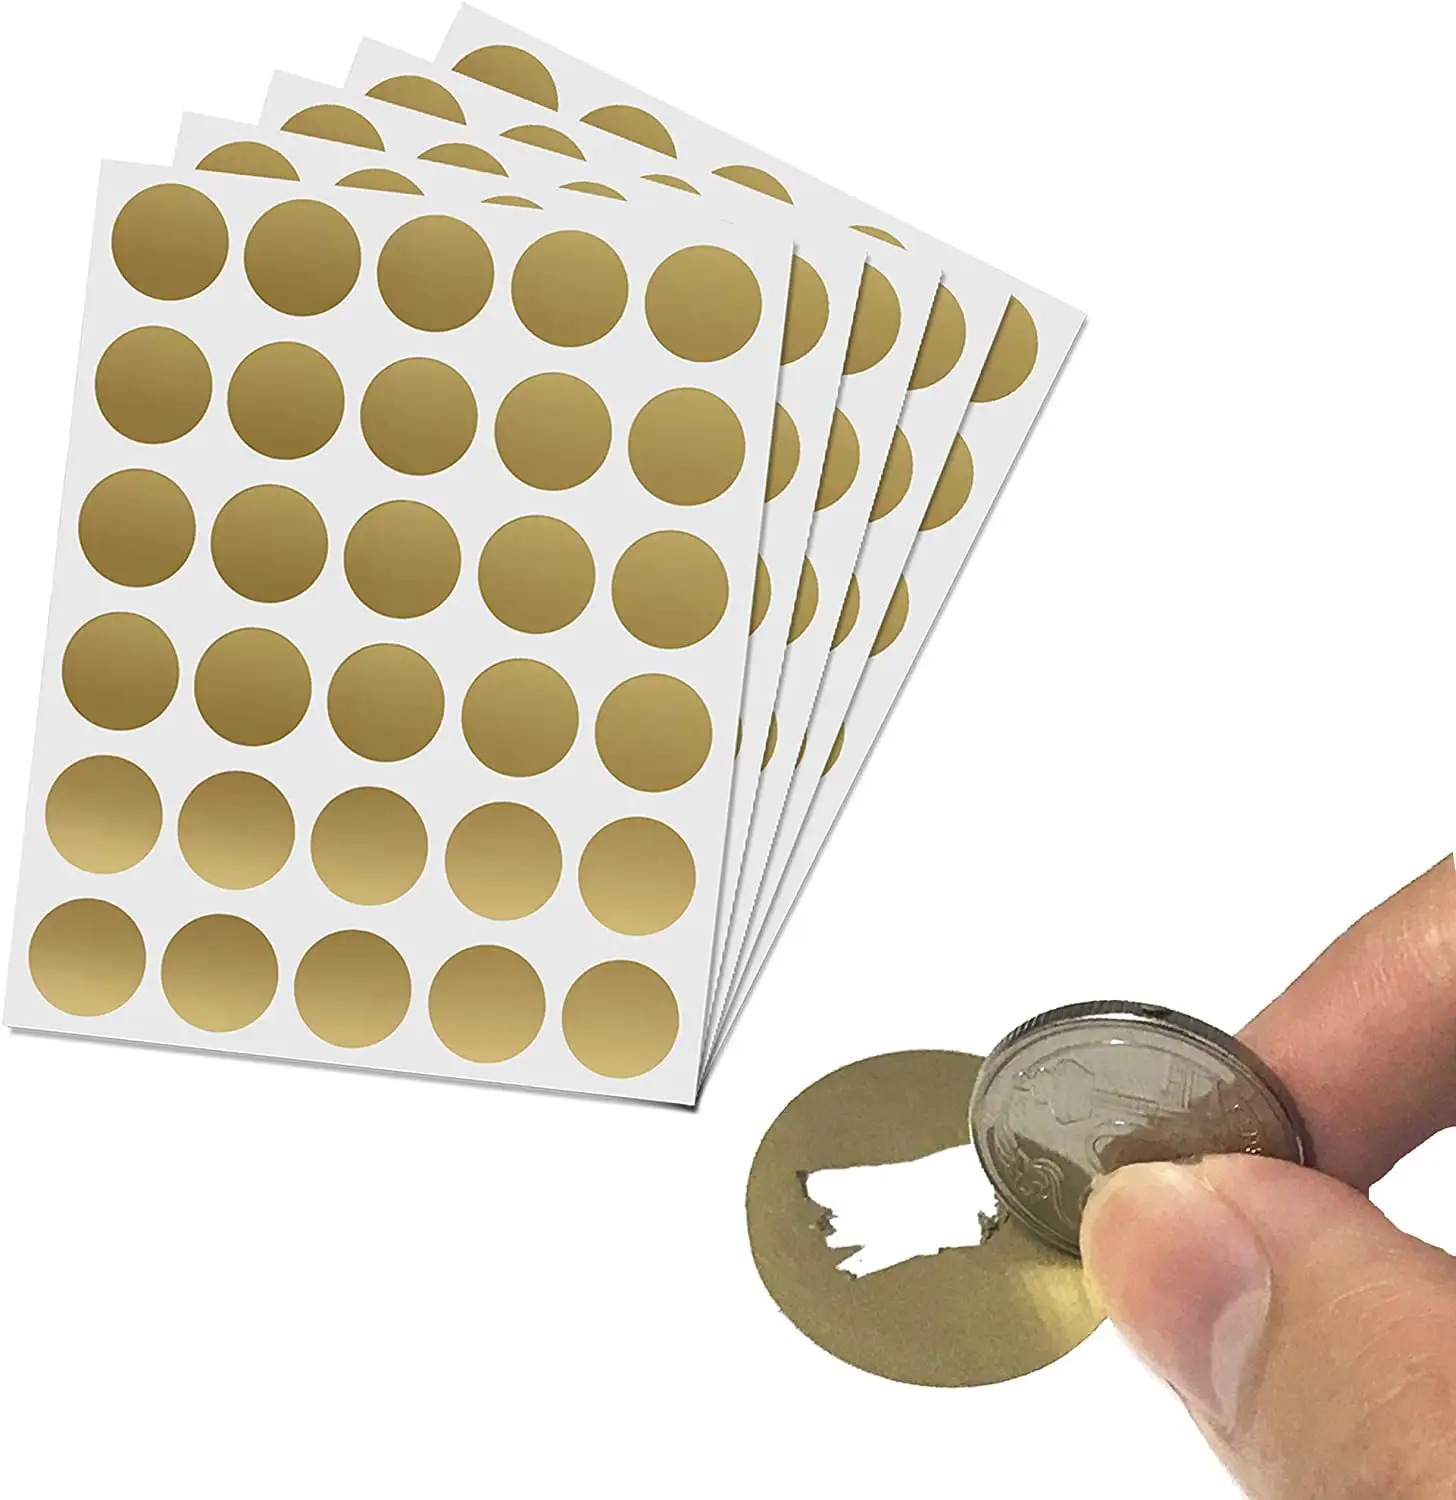 Custom Size Gold Silver Scratch Off Card Scratch Off Sticker Label